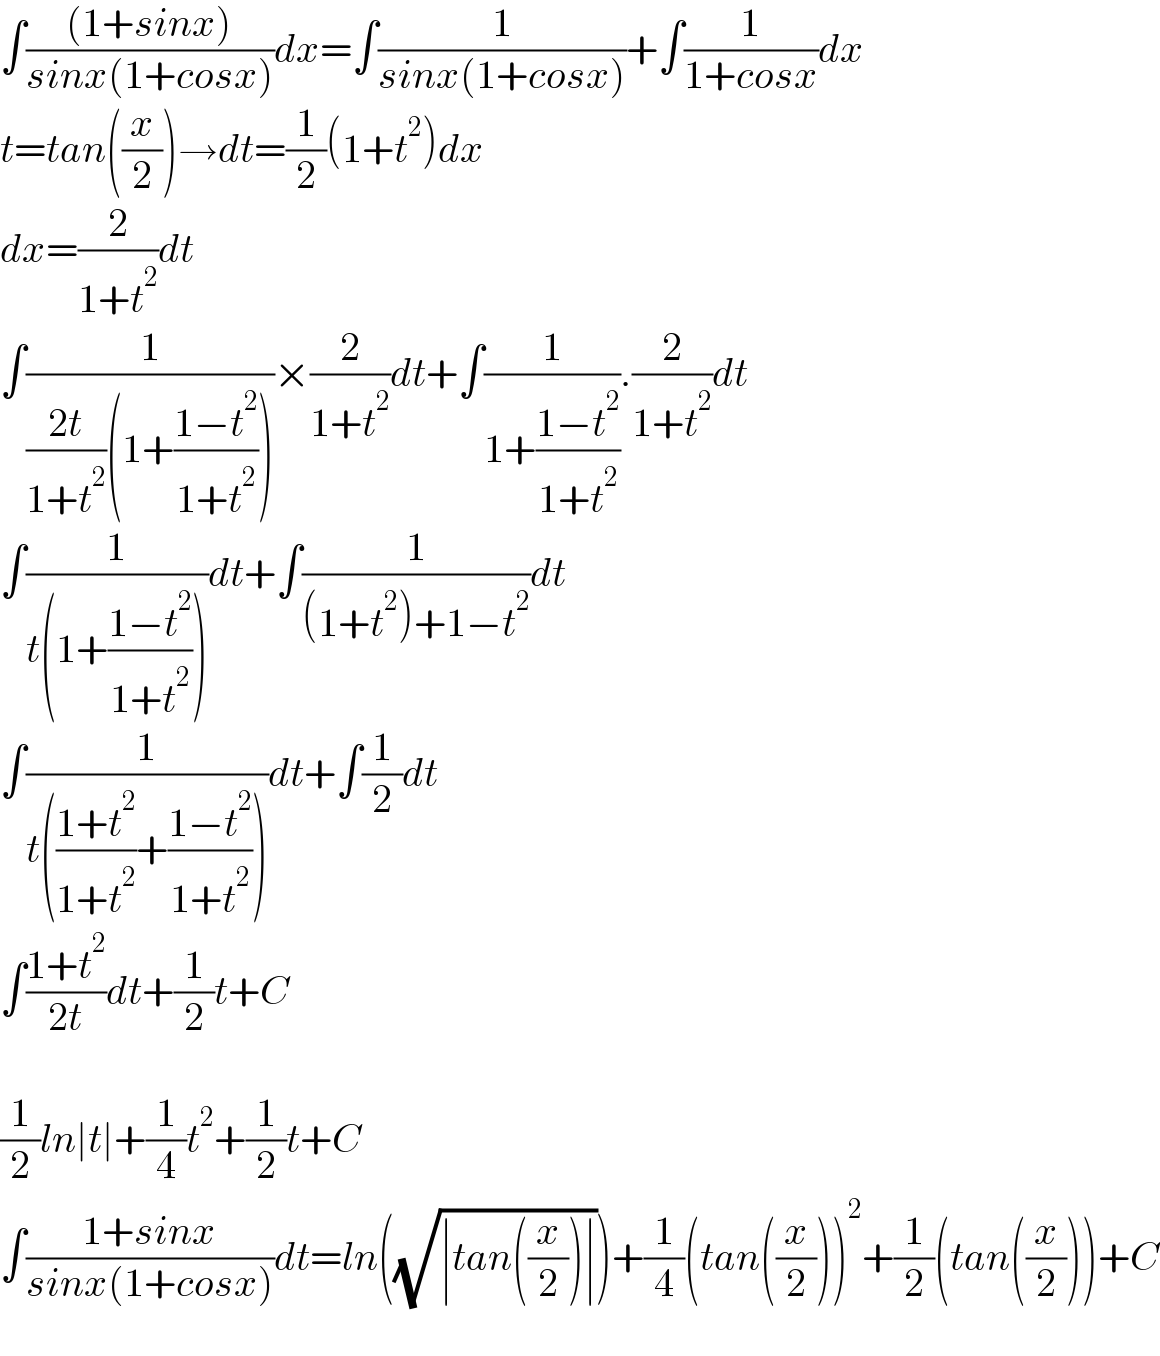 ∫(((1+sinx))/(sinx(1+cosx)))dx=∫(1/(sinx(1+cosx)))+∫(1/(1+cosx))dx  t=tan((x/2))→dt=(1/2)(1+t^2 )dx  dx=(2/(1+t^2 ))dt  ∫(1/(((2t)/(1+t^2 ))(1+((1−t^2 )/(1+t^2 )))))×(2/(1+t^2 ))dt+∫(1/(1+((1−t^2 )/(1+t^2 )))).(2/(1+t^2 ))dt  ∫(1/(t(1+((1−t^2 )/(1+t^2 )))))dt+∫(1/((1+t^2 )+1−t^2 ))dt  ∫(1/(t(((1+t^2 )/(1+t^2 ))+((1−t^2 )/(1+t^2 )))))dt+∫(1/2)dt  ∫((1+t^2 )/(2t))dt+(1/2)t+C    (1/2)ln∣t∣+(1/4)t^2 +(1/2)t+C  ∫((1+sinx)/(sinx(1+cosx)))dt=ln((√(∣tan((x/2))∣)))+(1/4)(tan((x/2)))^2 +(1/2)(tan((x/2)))+C    